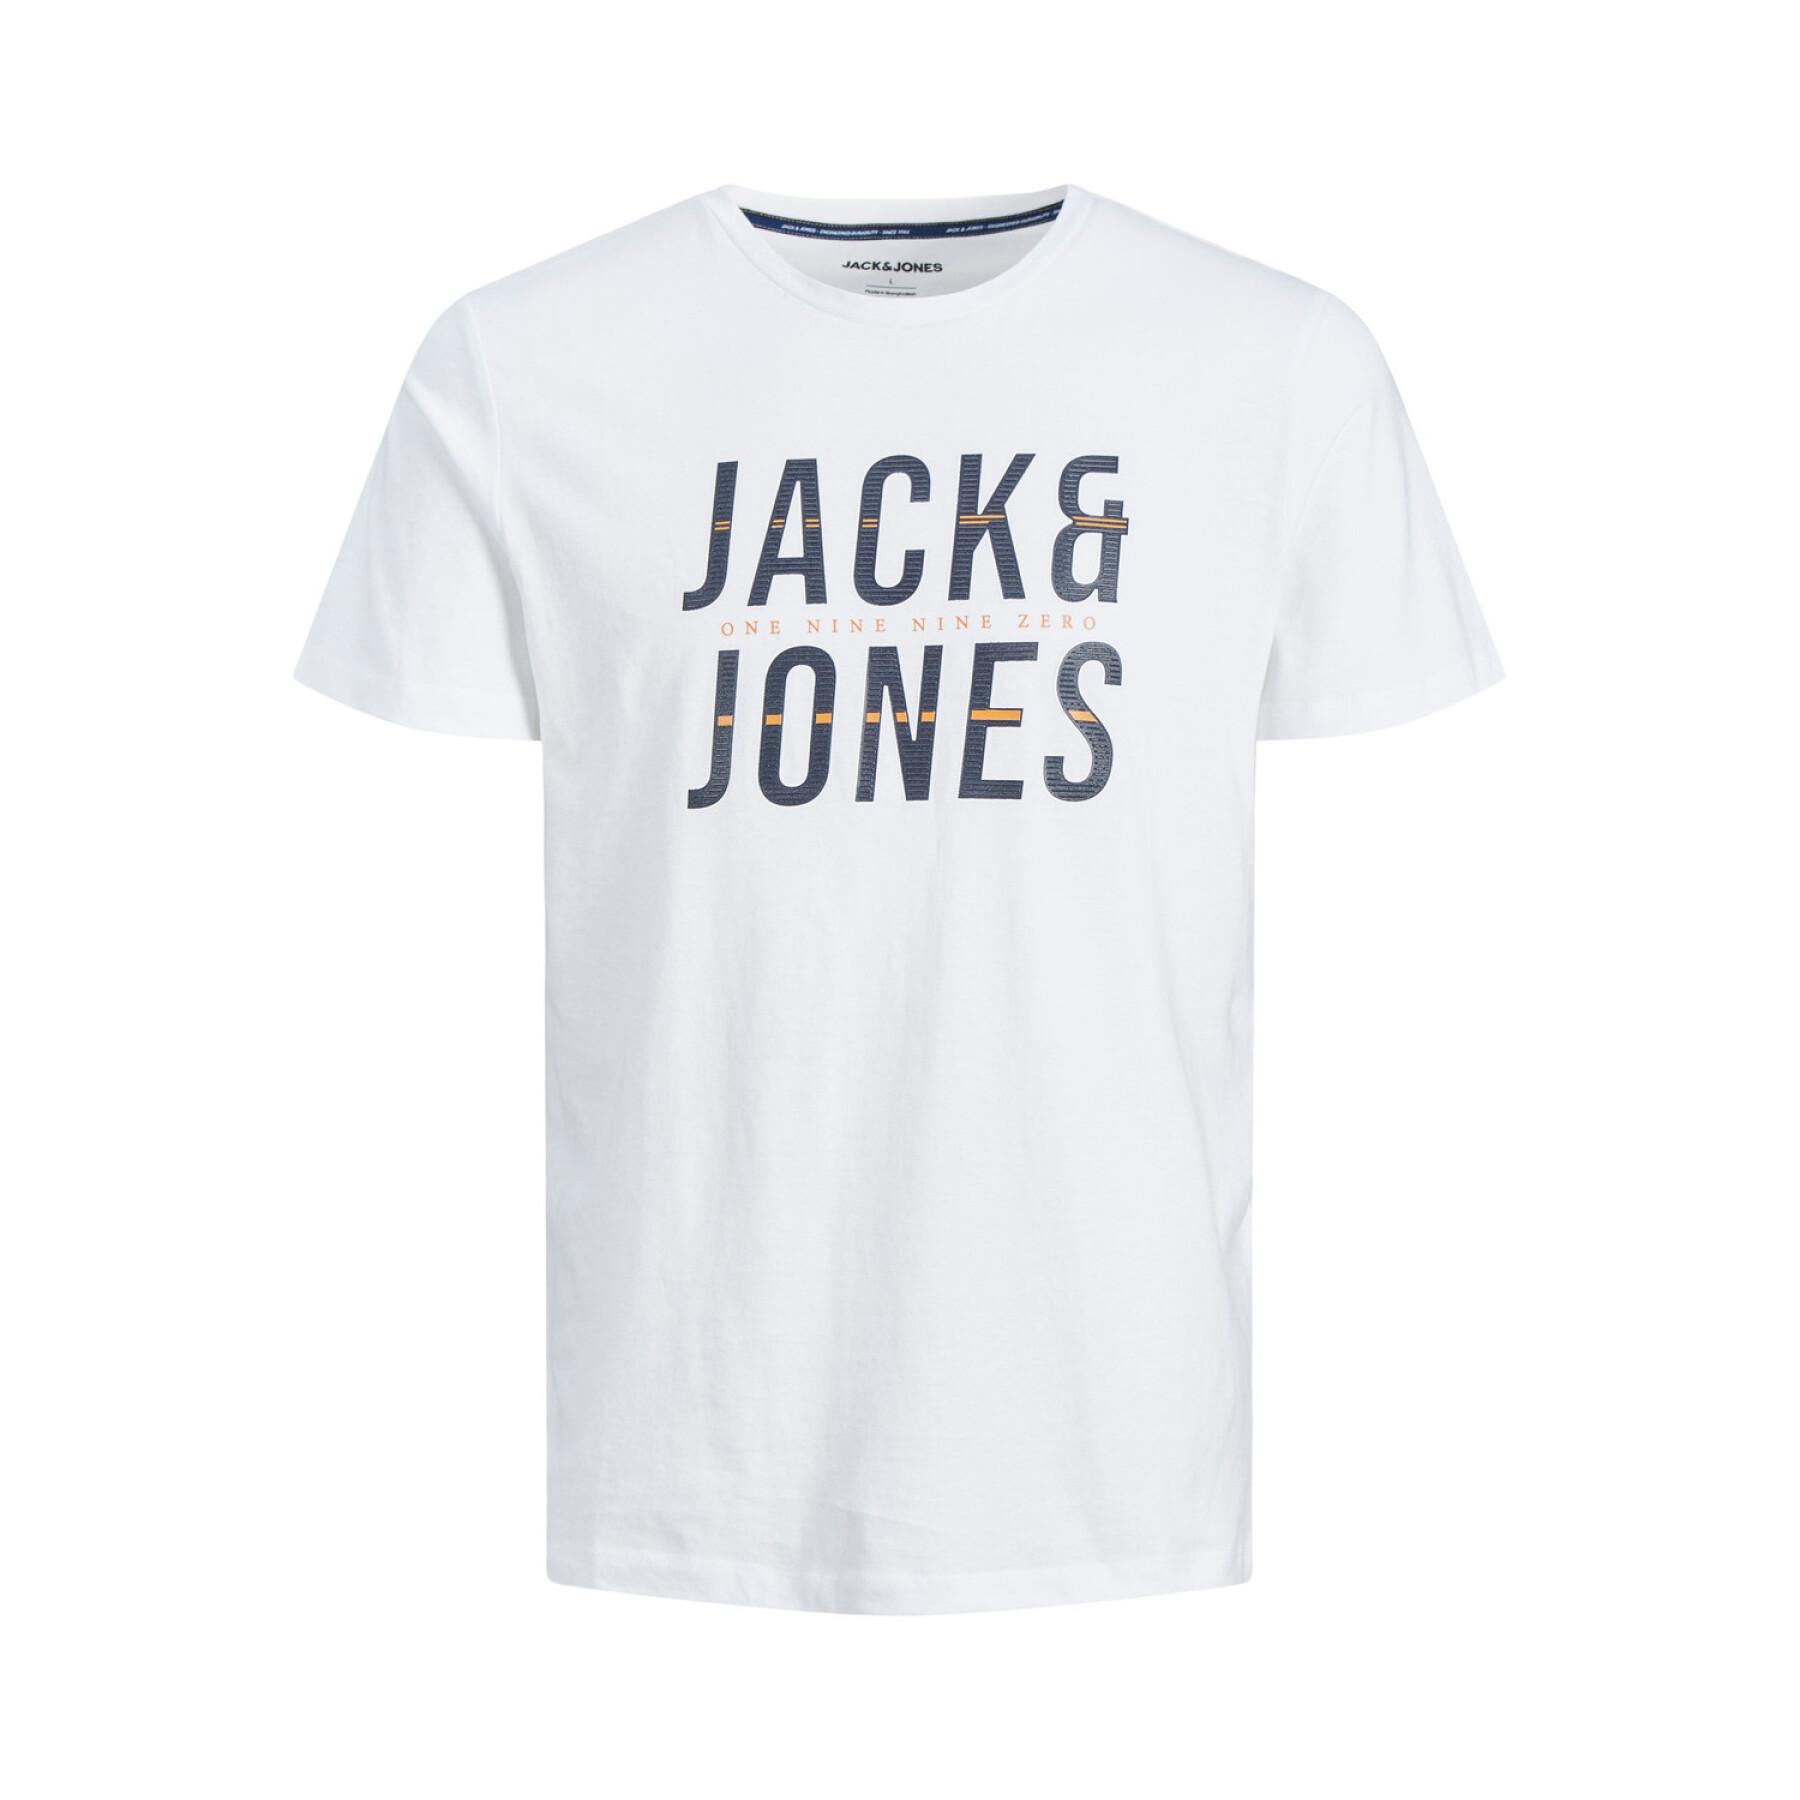 Camiseta Jack & Jones Xilo